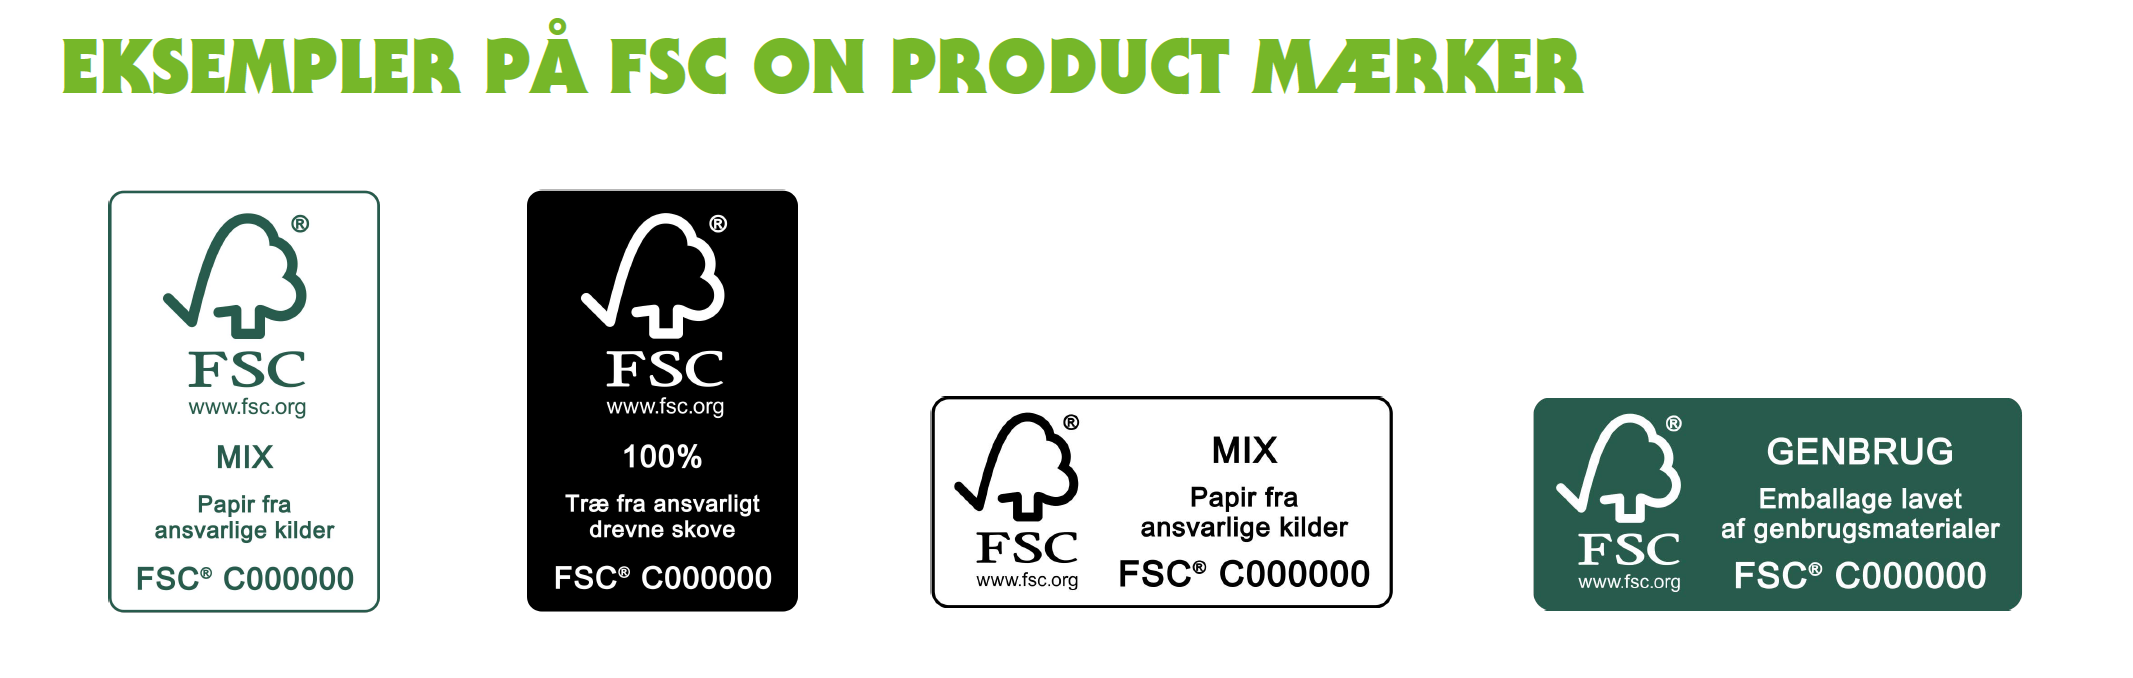 Eksempler på FSC-mærker